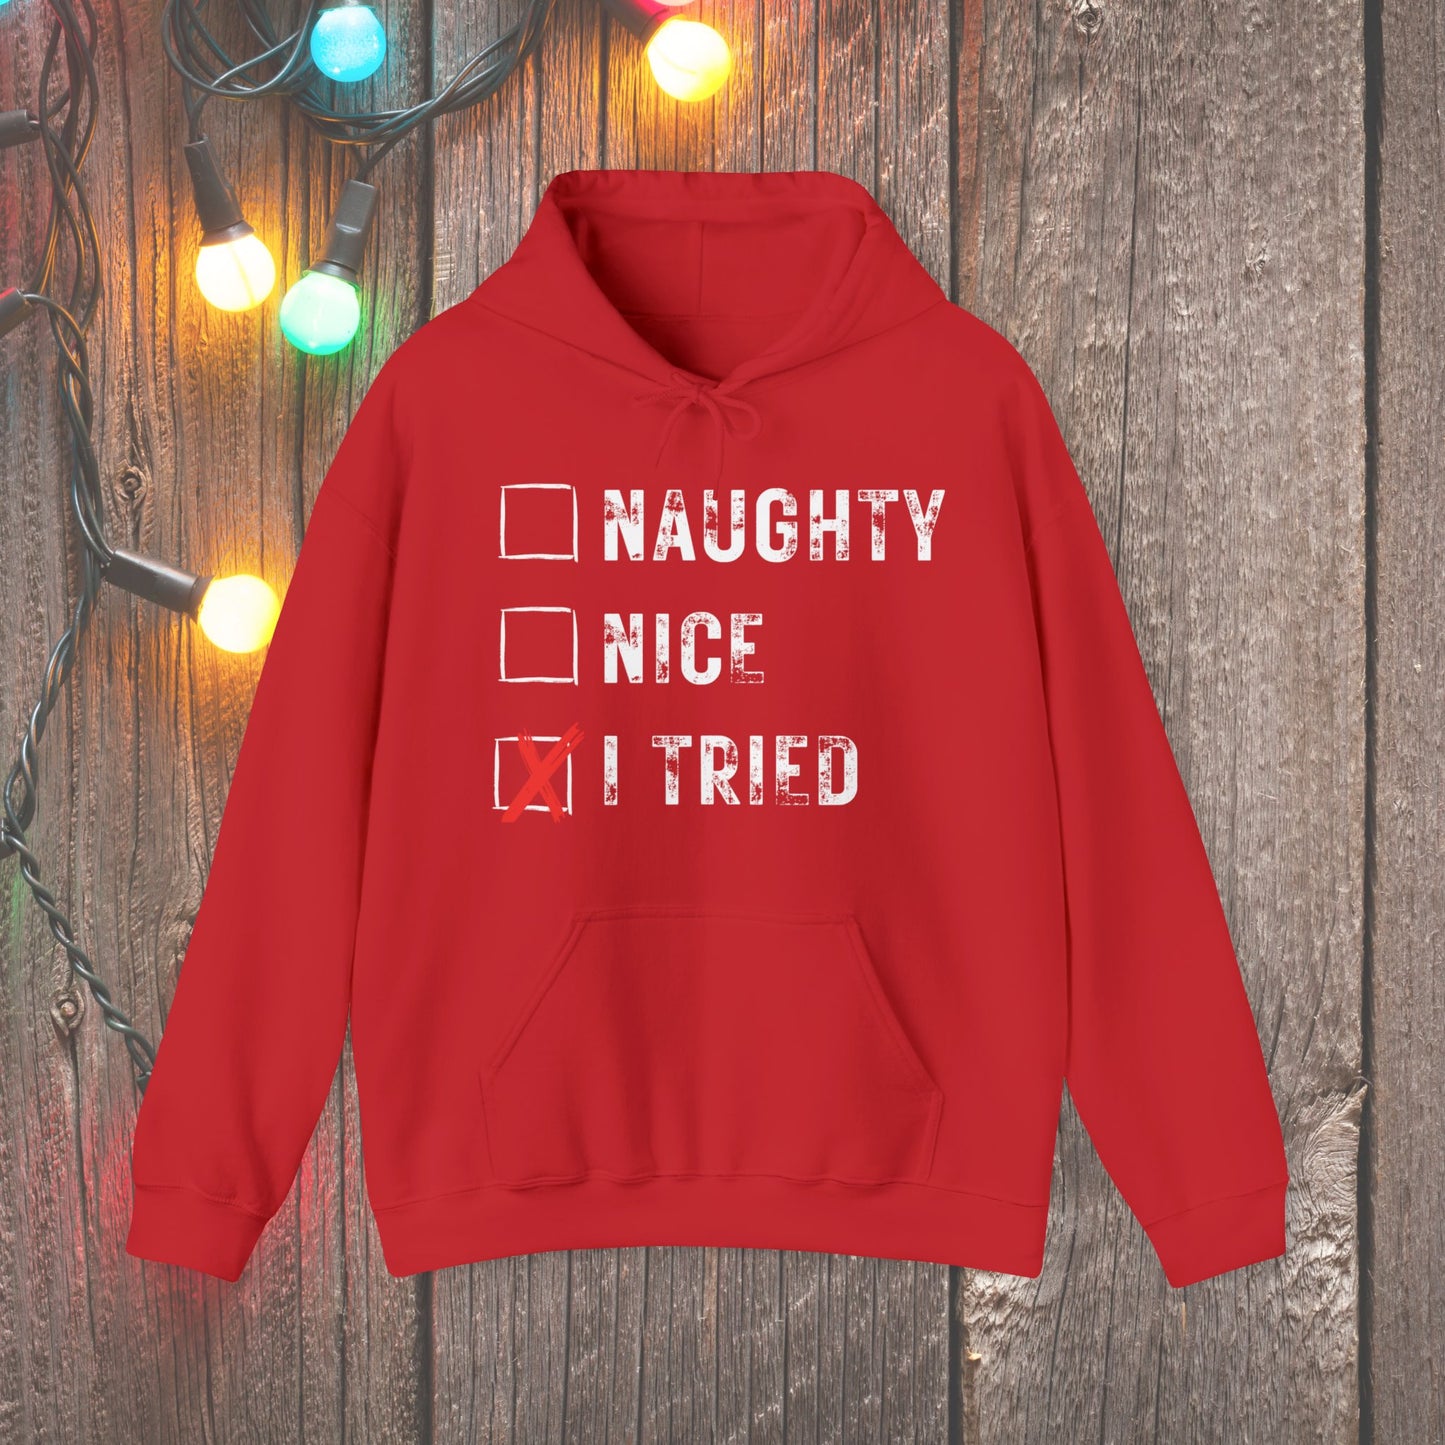 Christmas Hoodie - Naughty Nice I Tried - Mens Christmas Shirts - Youth and Adult Christmas Hooded Sweatshirt Hooded Sweatshirt Graphic Avenue Red Adult Small 